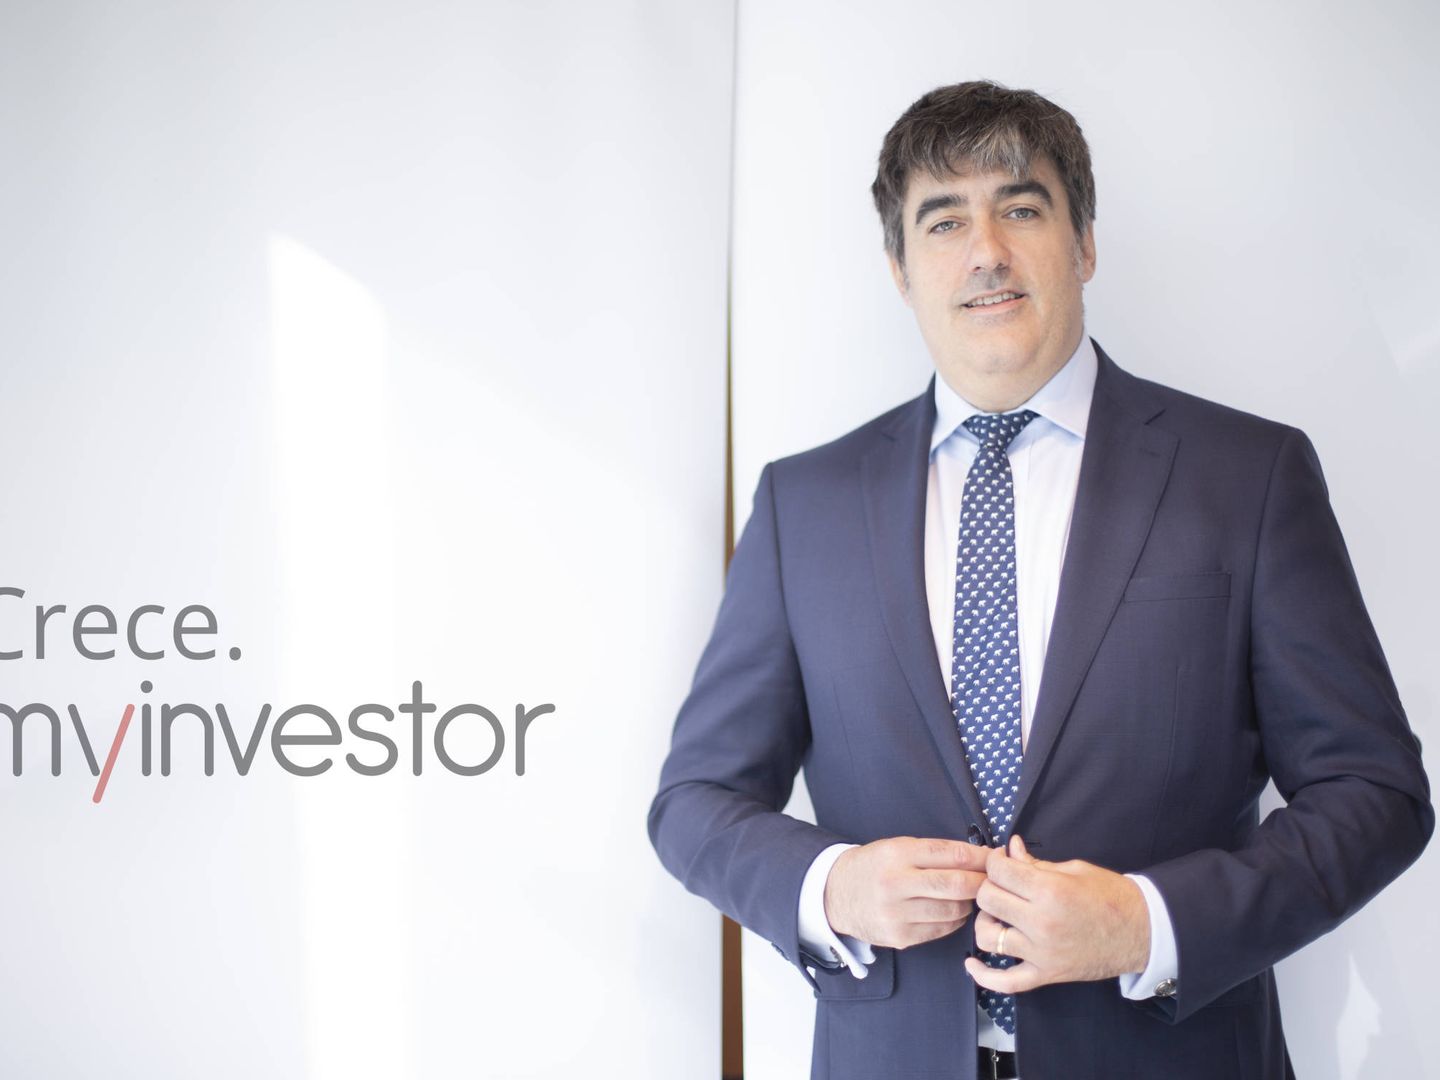 Carlos Aso, CEO de Andbank, grupo al que pertenece MyInvestor.